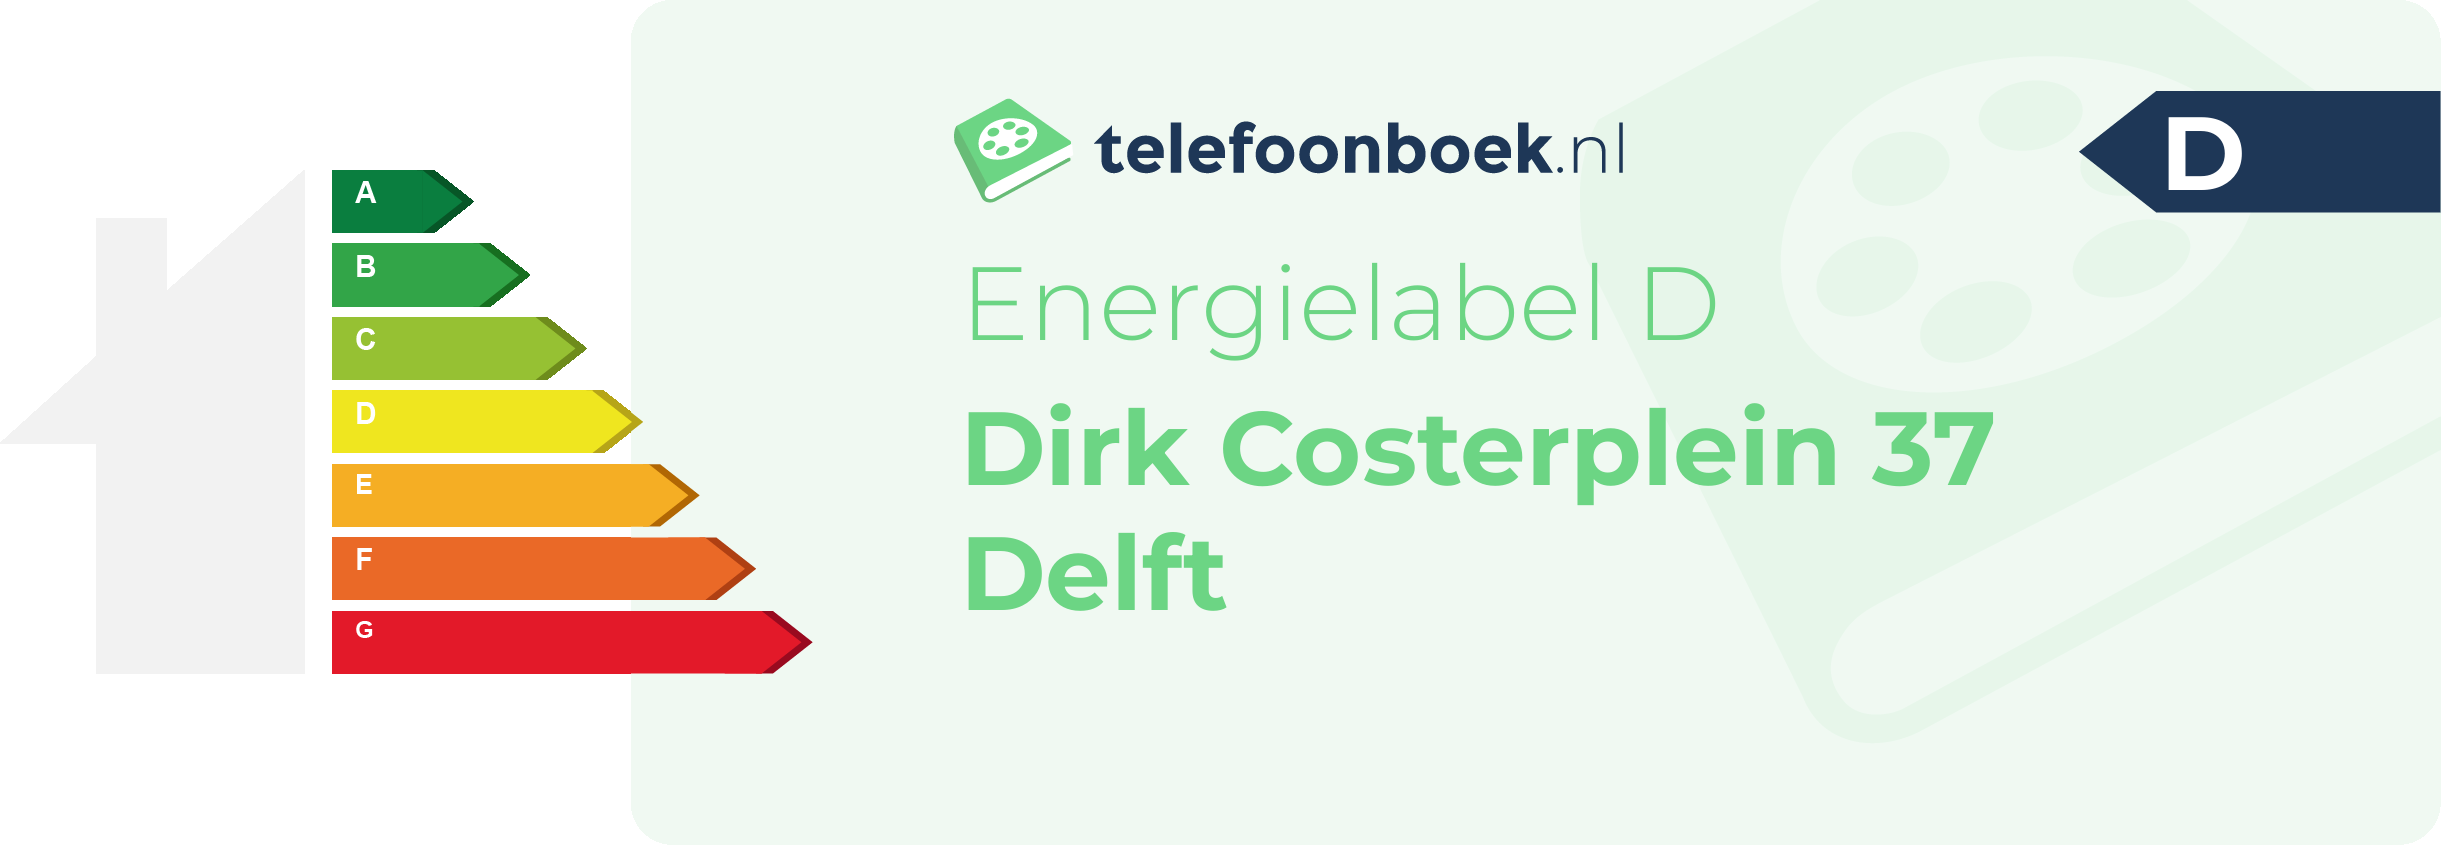 Energielabel Dirk Costerplein 37 Delft